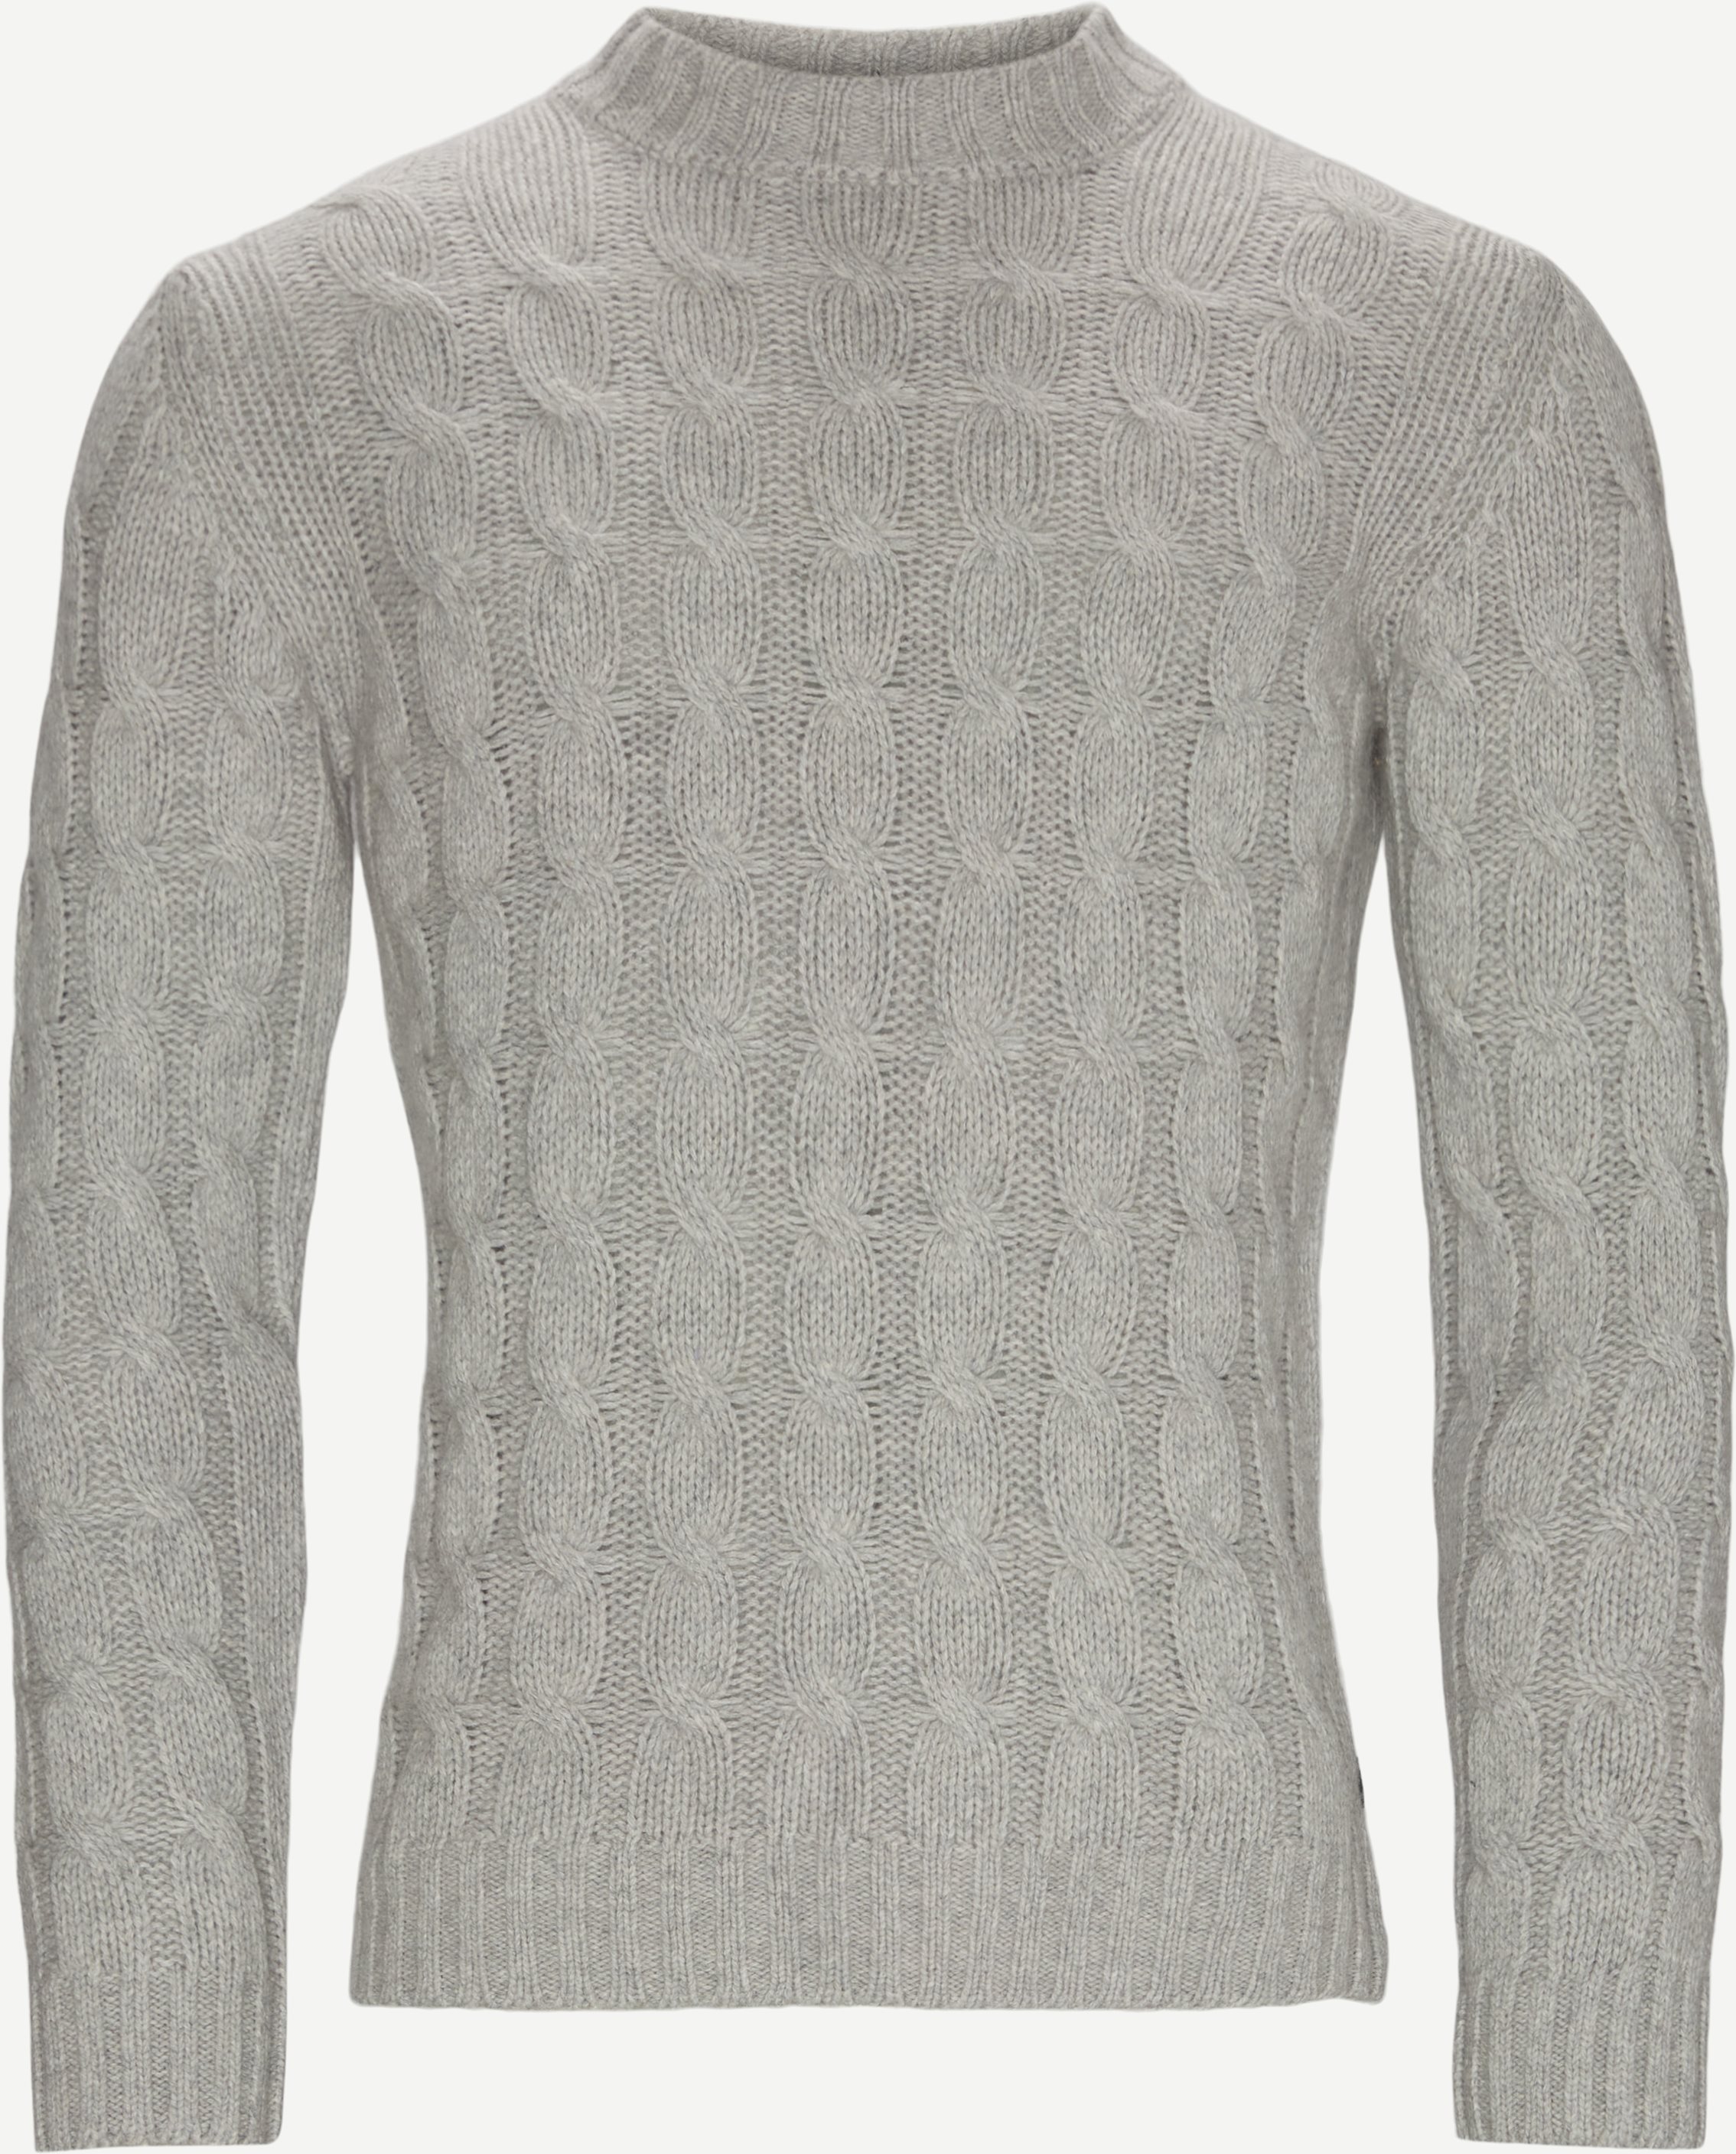 5501 Iq Turtle Neck Knit - Knitwear - Regular fit - Grey